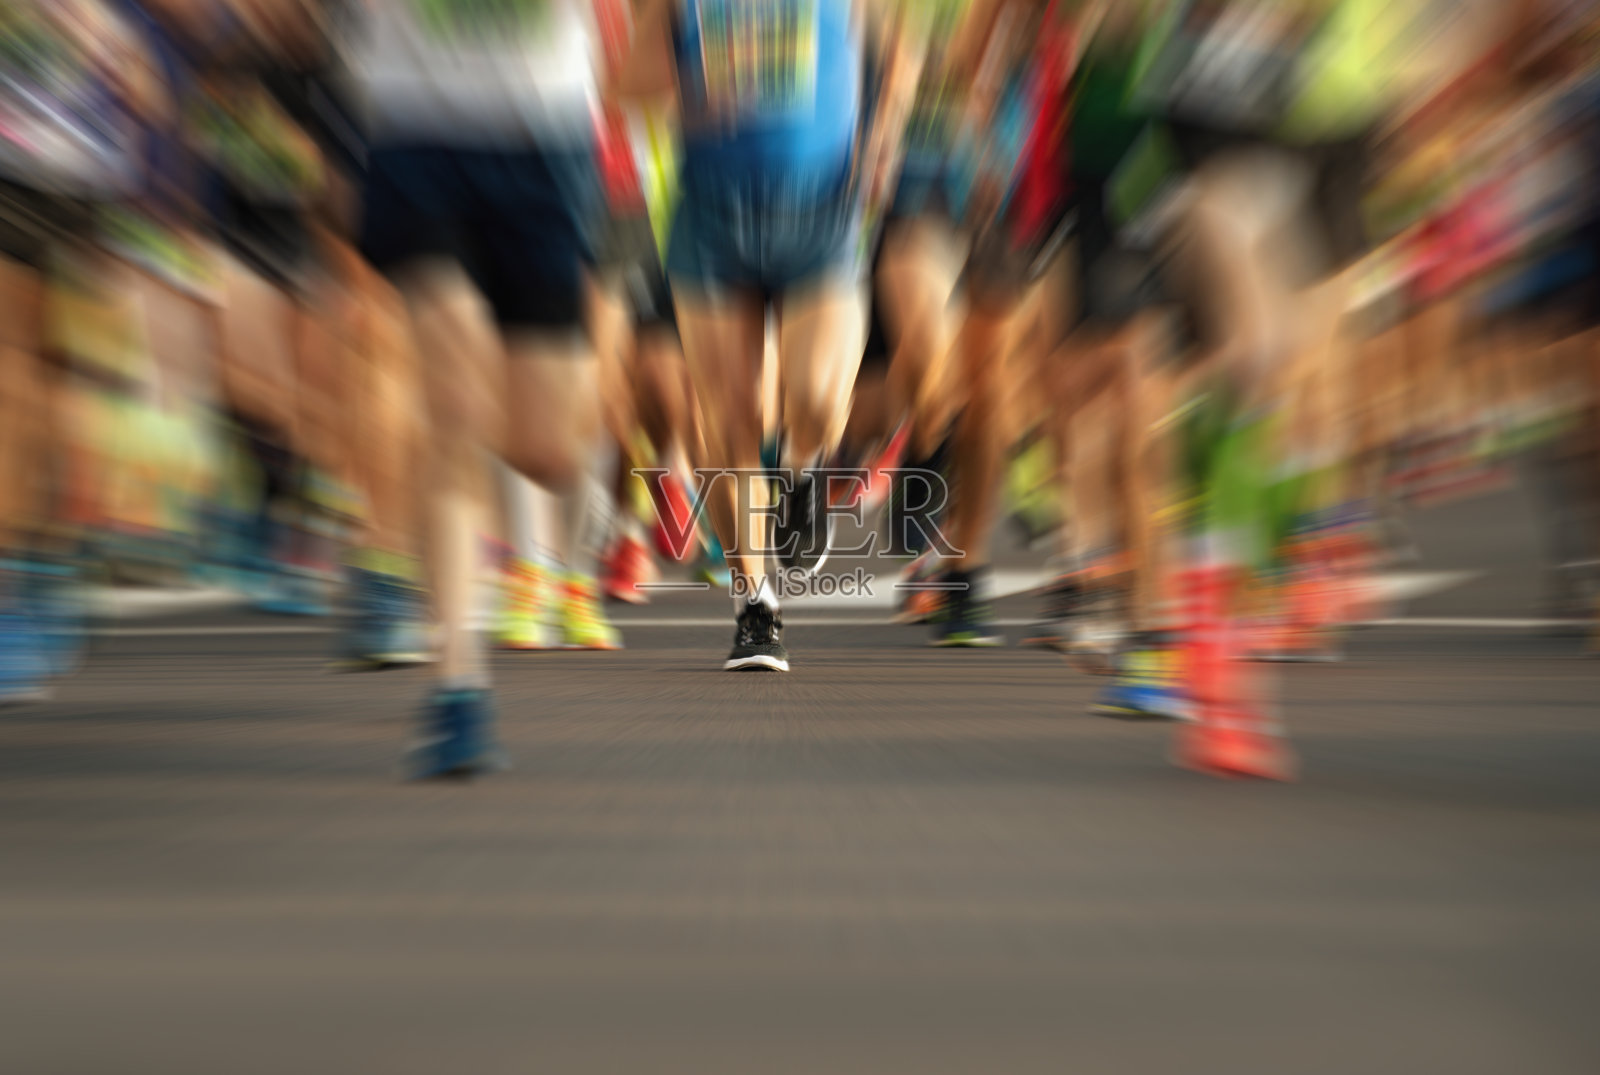 跑马拉松比赛照片摄影图片